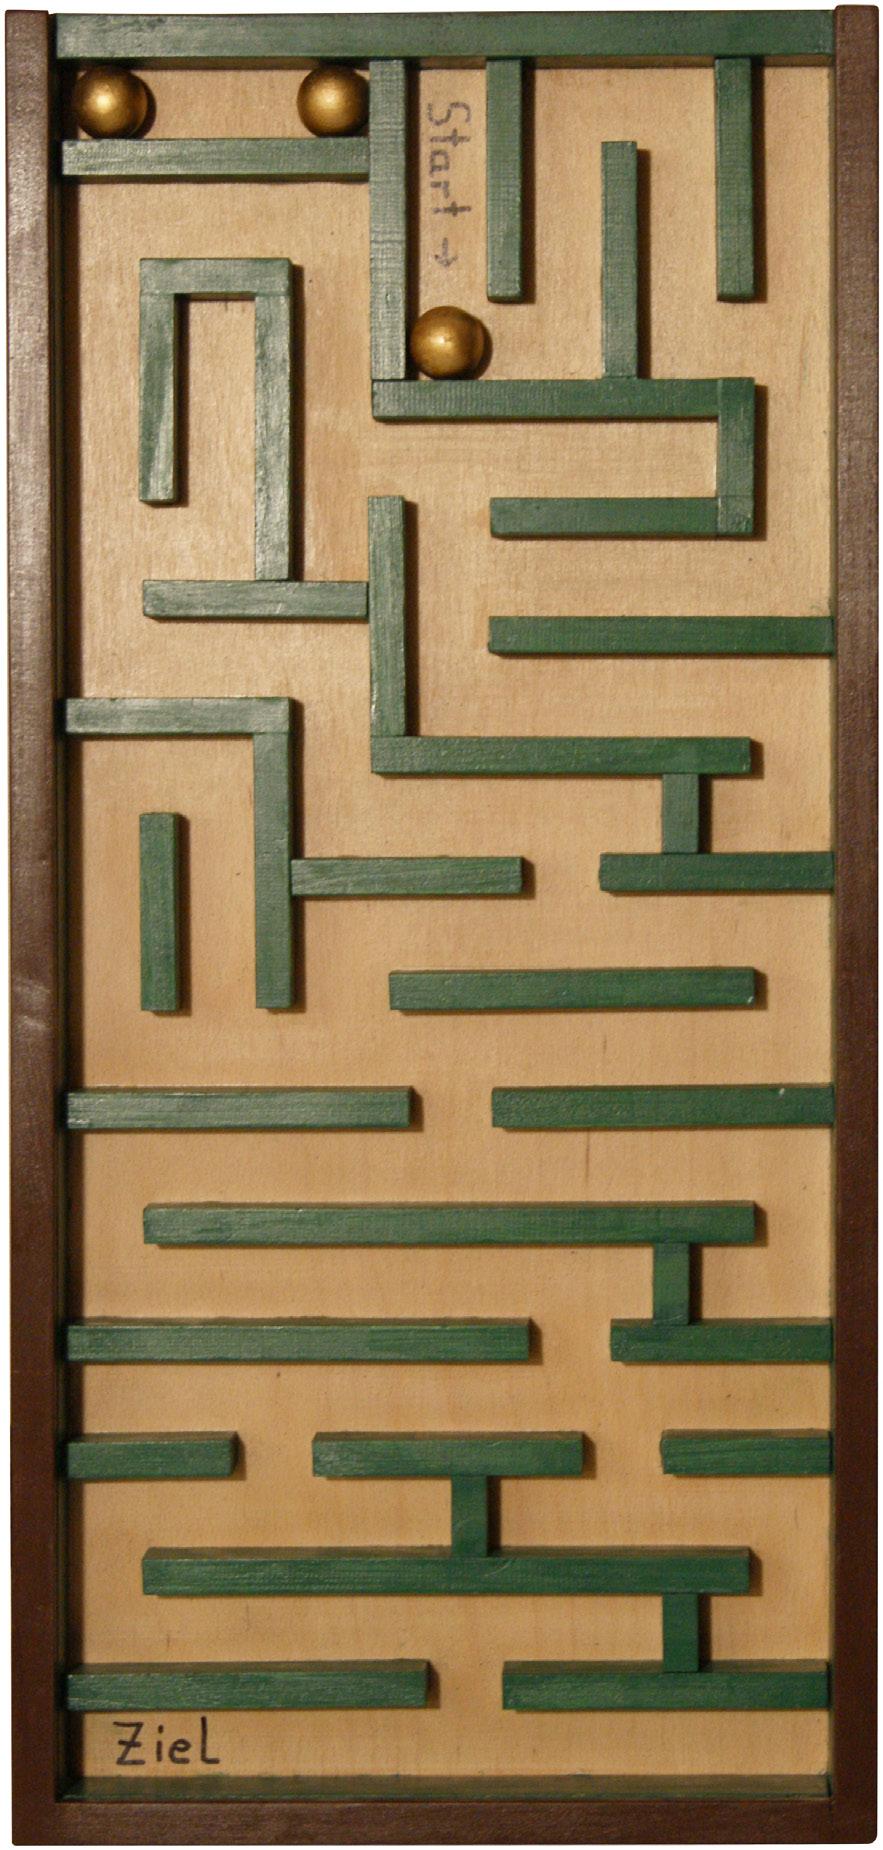 Labyrinth-Kasten» Einzelspiel oder zu zweit» 1 Labyrinth» 3 Holzkugeln» Labyrinth-Kasten öffnen, der Spieler nimmt ihn in beide Hände.